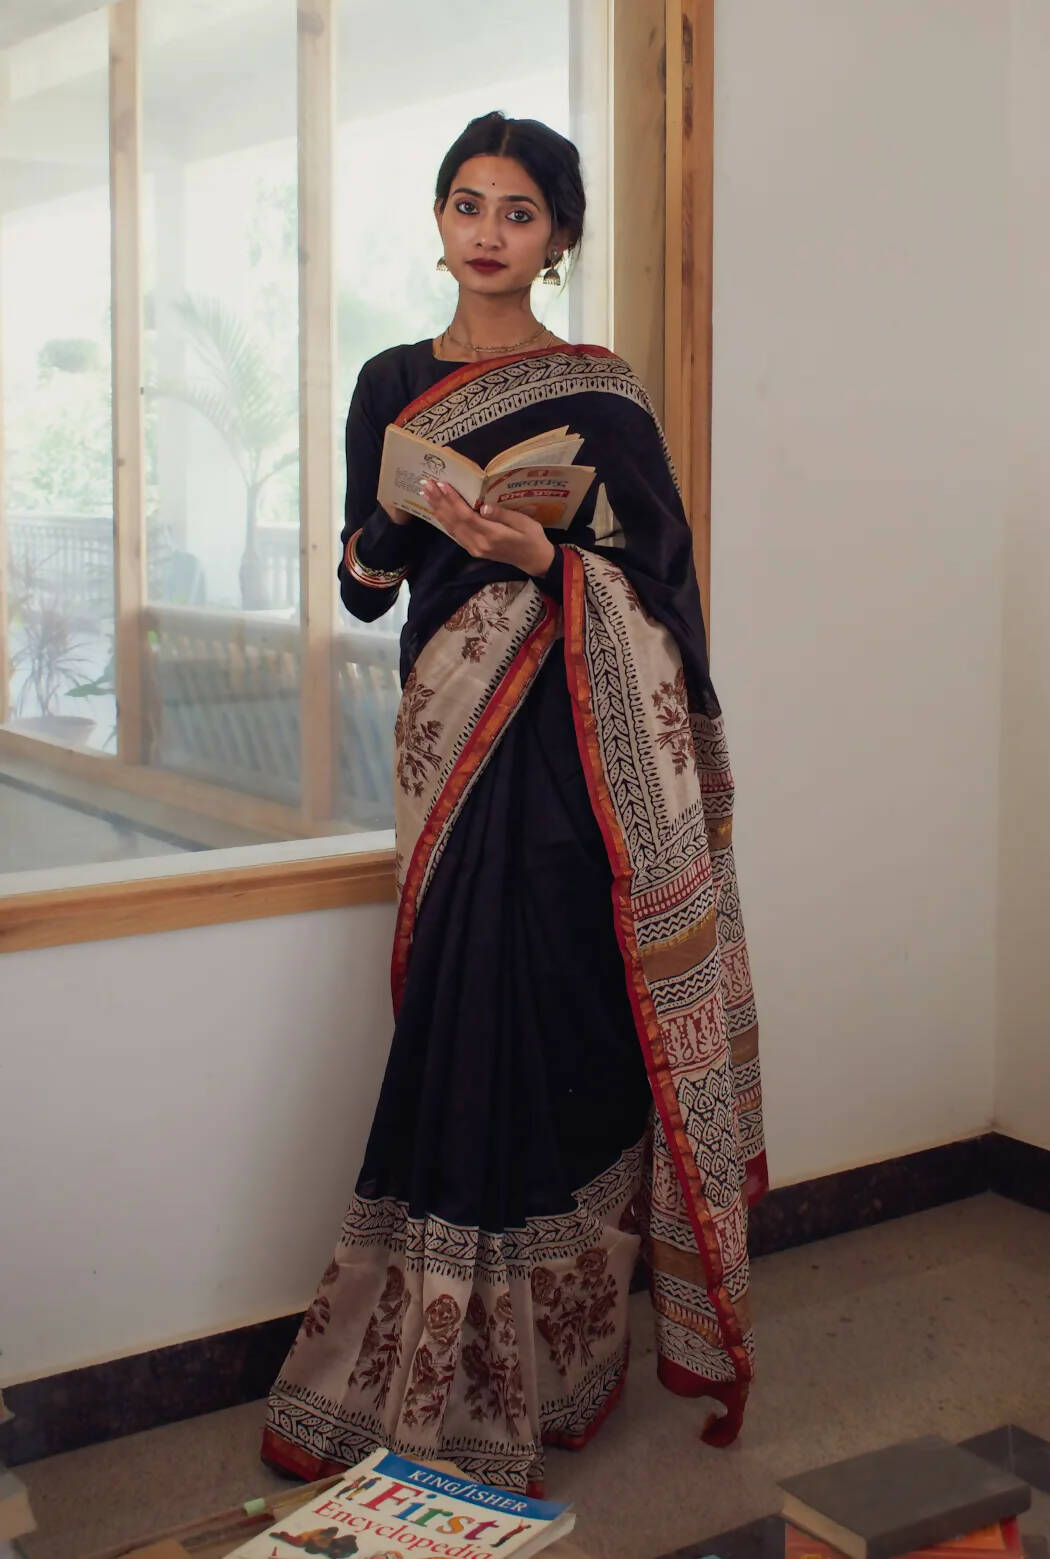 mumtaz style (9 yard?) | Saree draping styles, Saree, Indian outfits